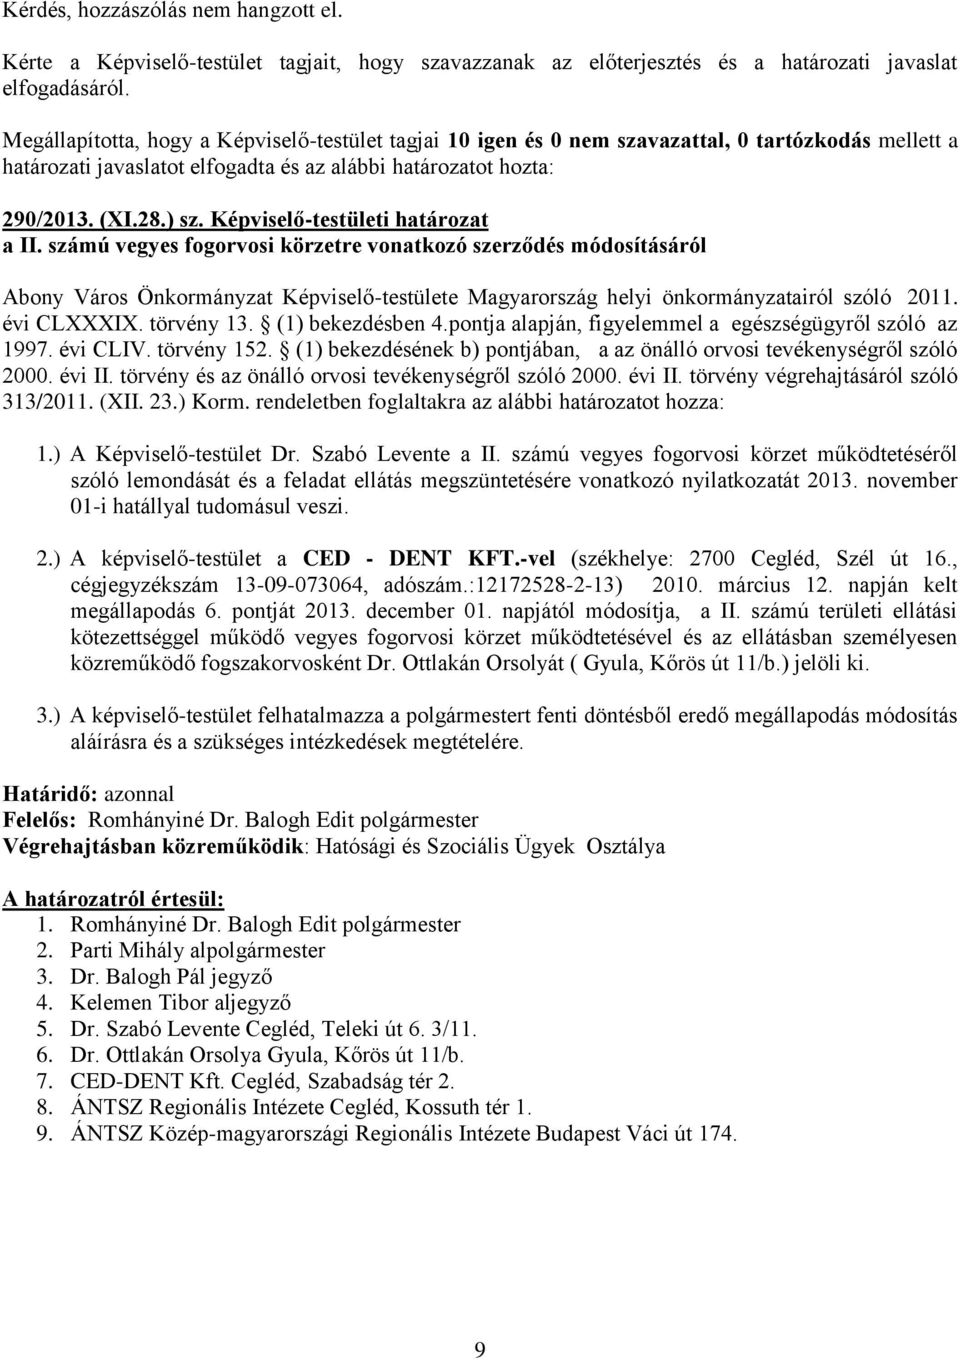 Képviselő-testületi határozat a II. számú vegyes fogorvosi körzetre vonatkozó szerződés módosításáról Abony Város Önkormányzat Képviselő-testülete Magyarország helyi önkormányzatairól szóló 2011.